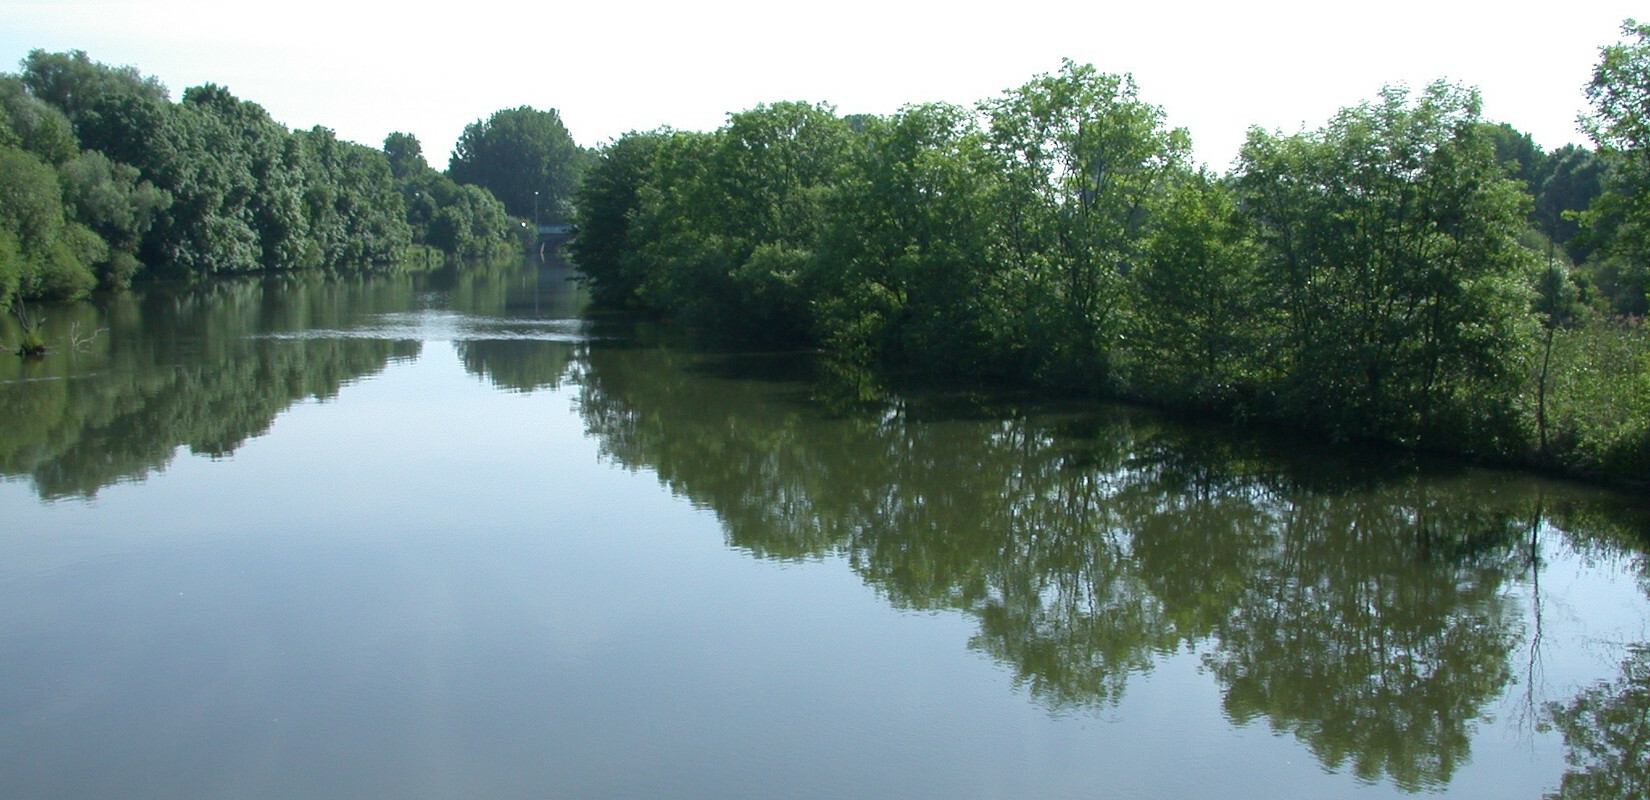 The river Danube near Ulm